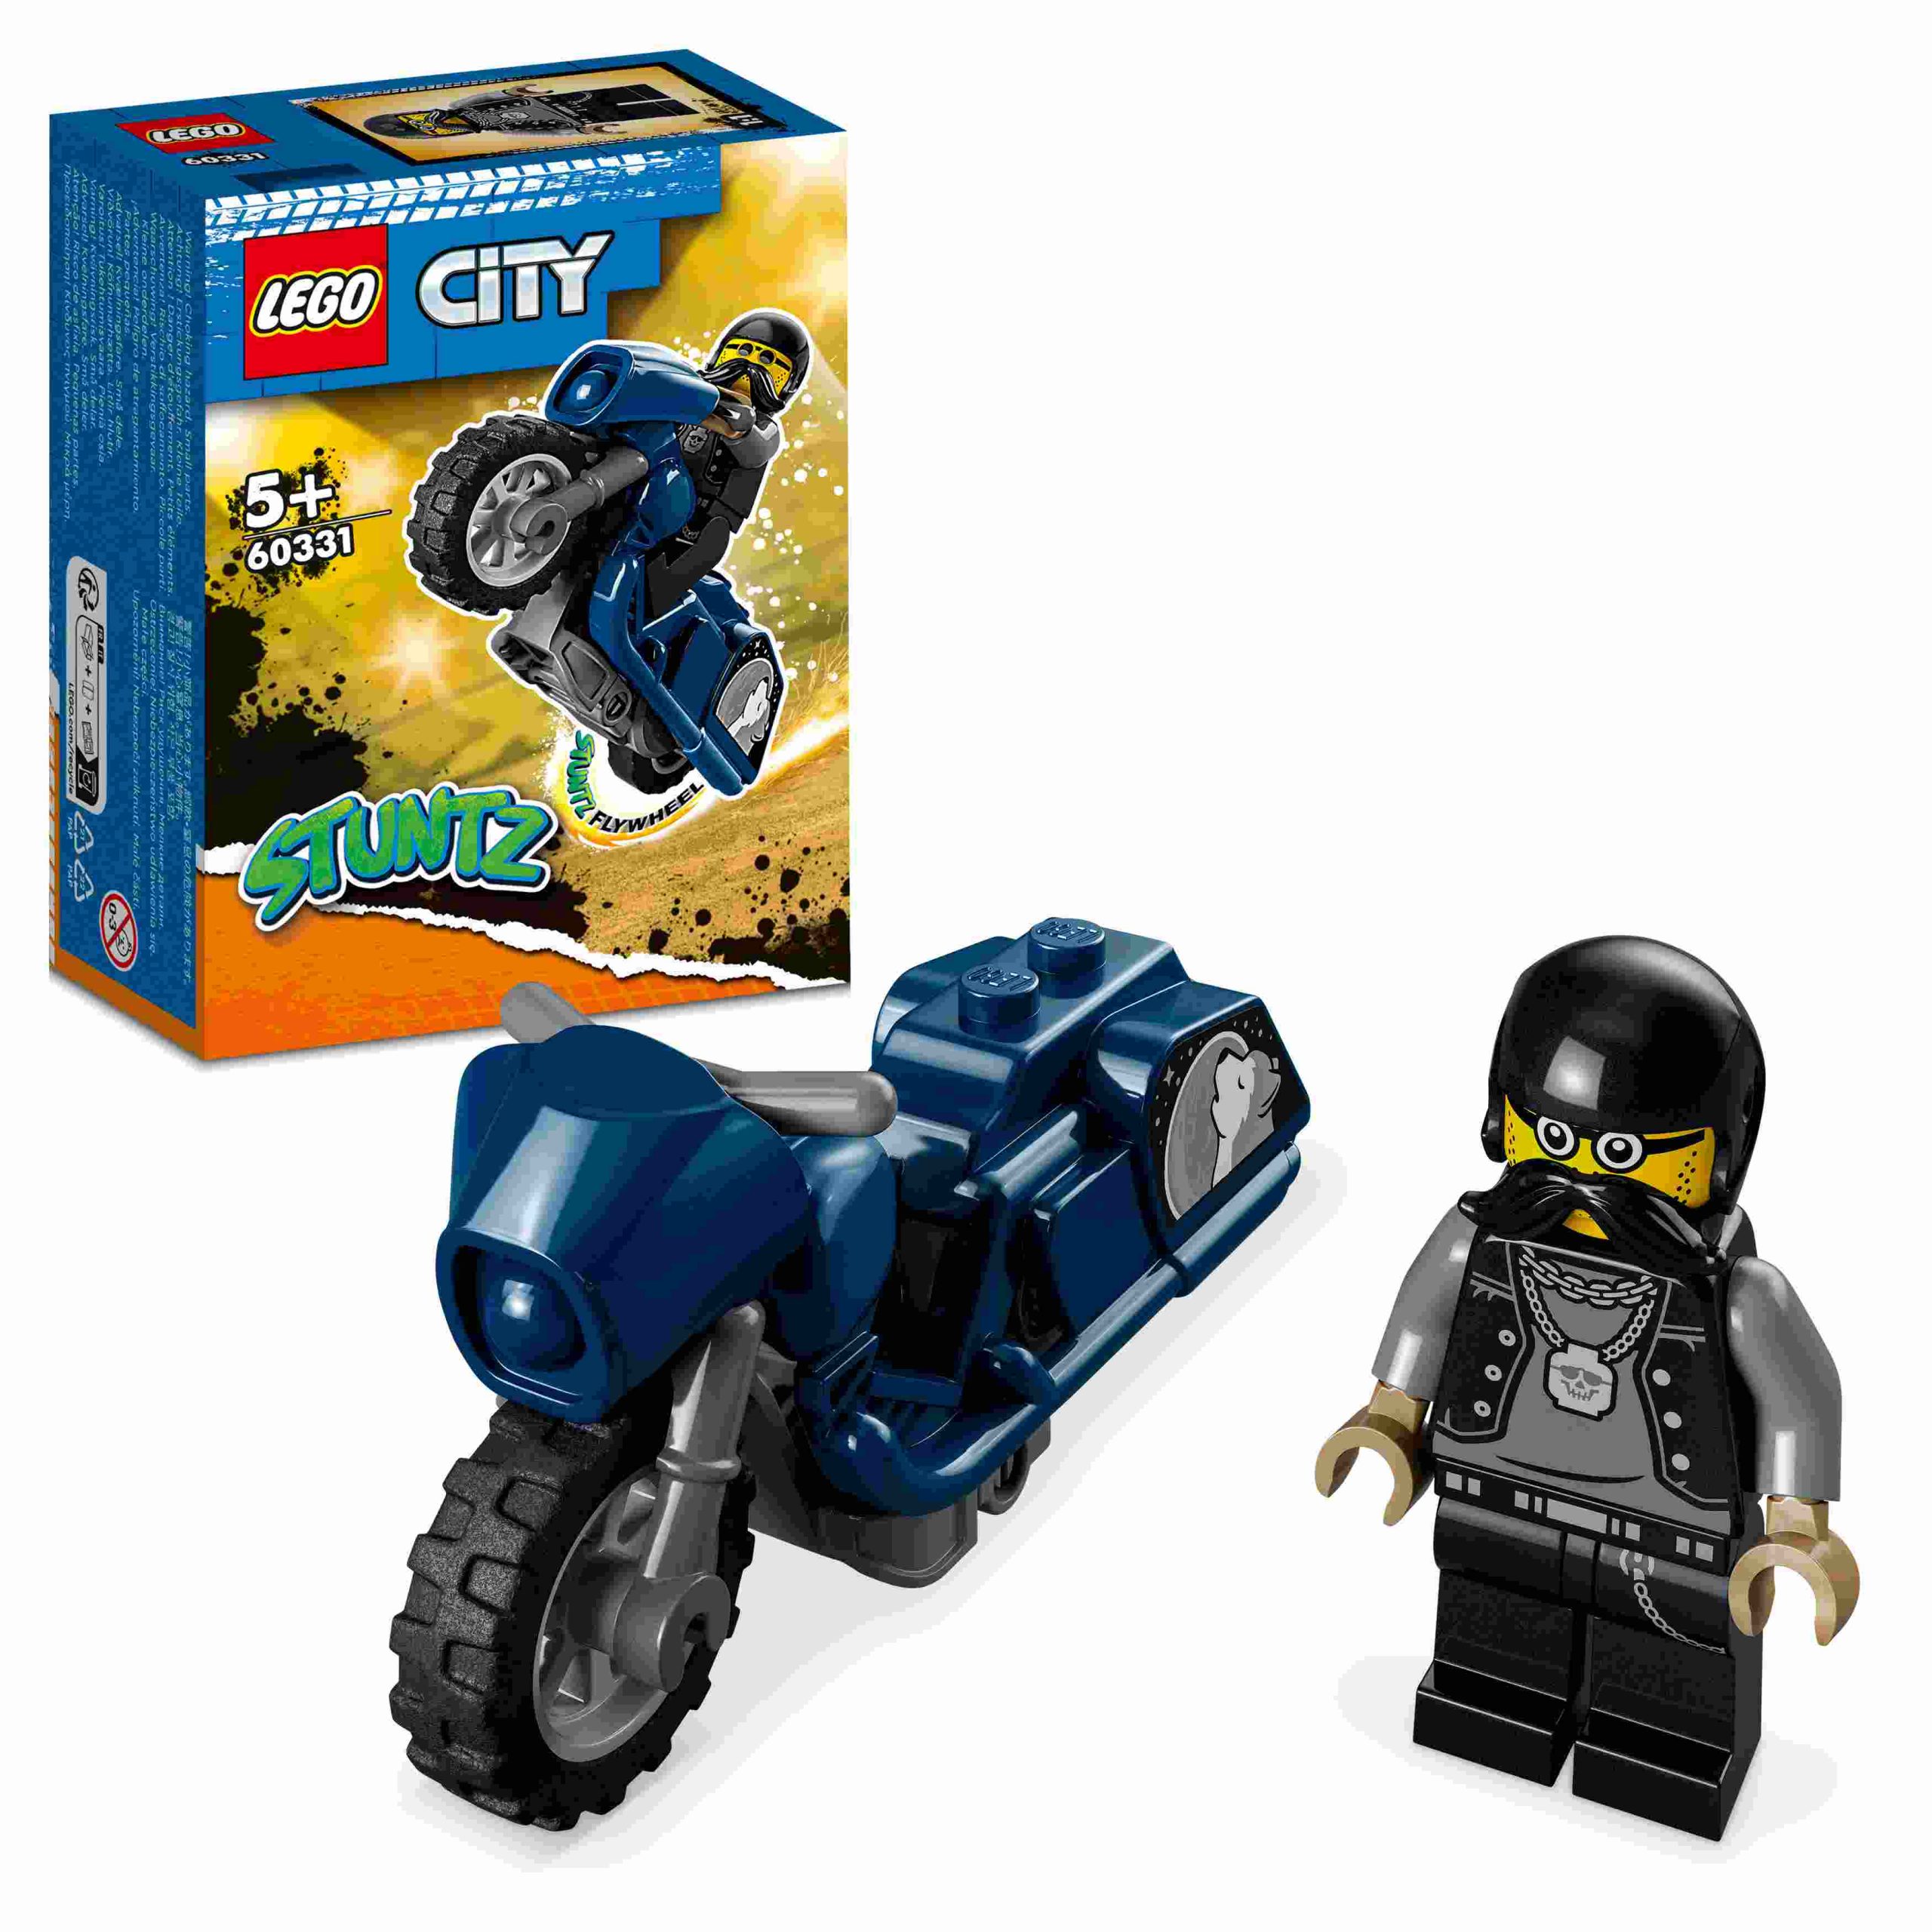 Lego city stuntz 60331 stunt bike da touring, moto giocattolo con minifigure, giochi per bambini dai 5 anni, idea regalo - LEGO CITY, LEGO CITY STUNTZ, Lego